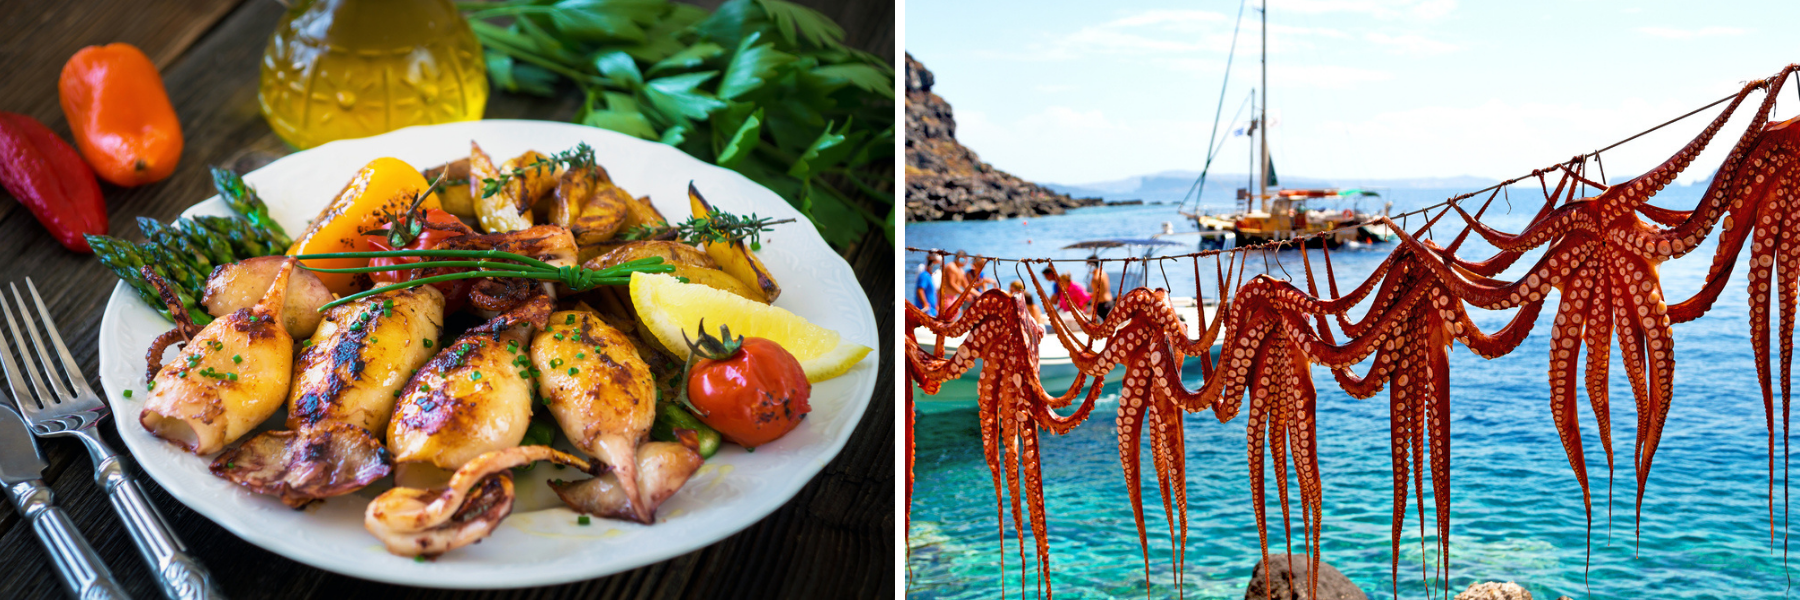 Zarówno w kuchni chorwackiej, jak i greckiej dominują owoce morza.